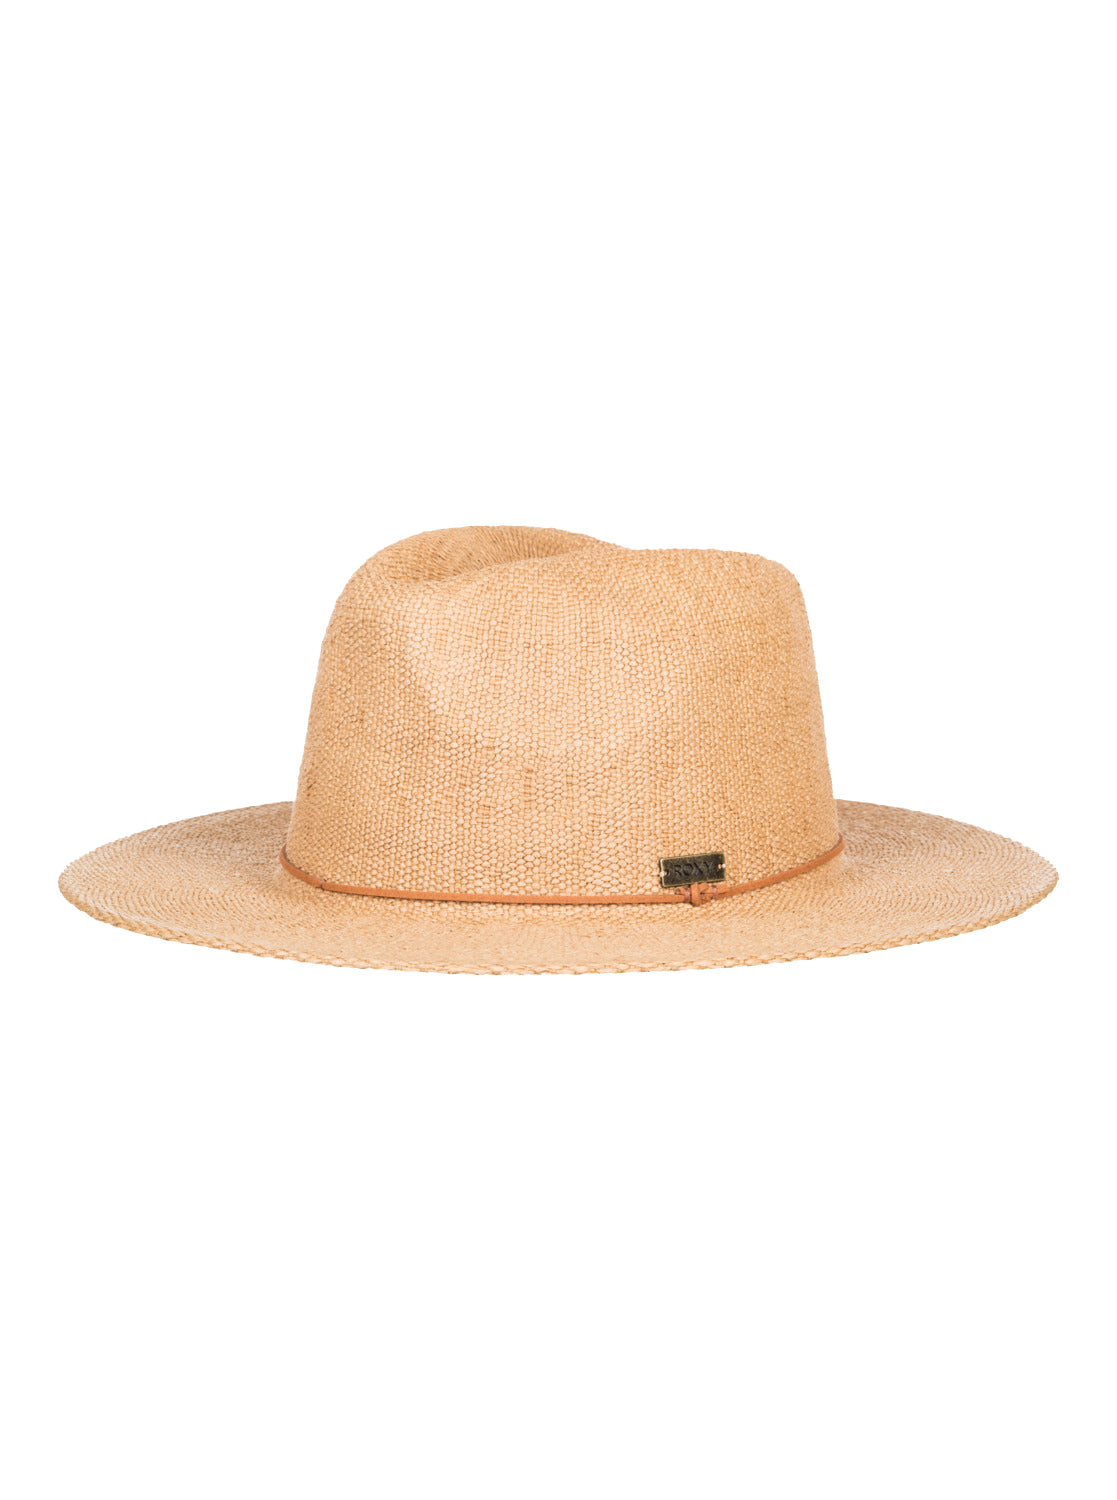 Roxy Early Sunset Panama Hat